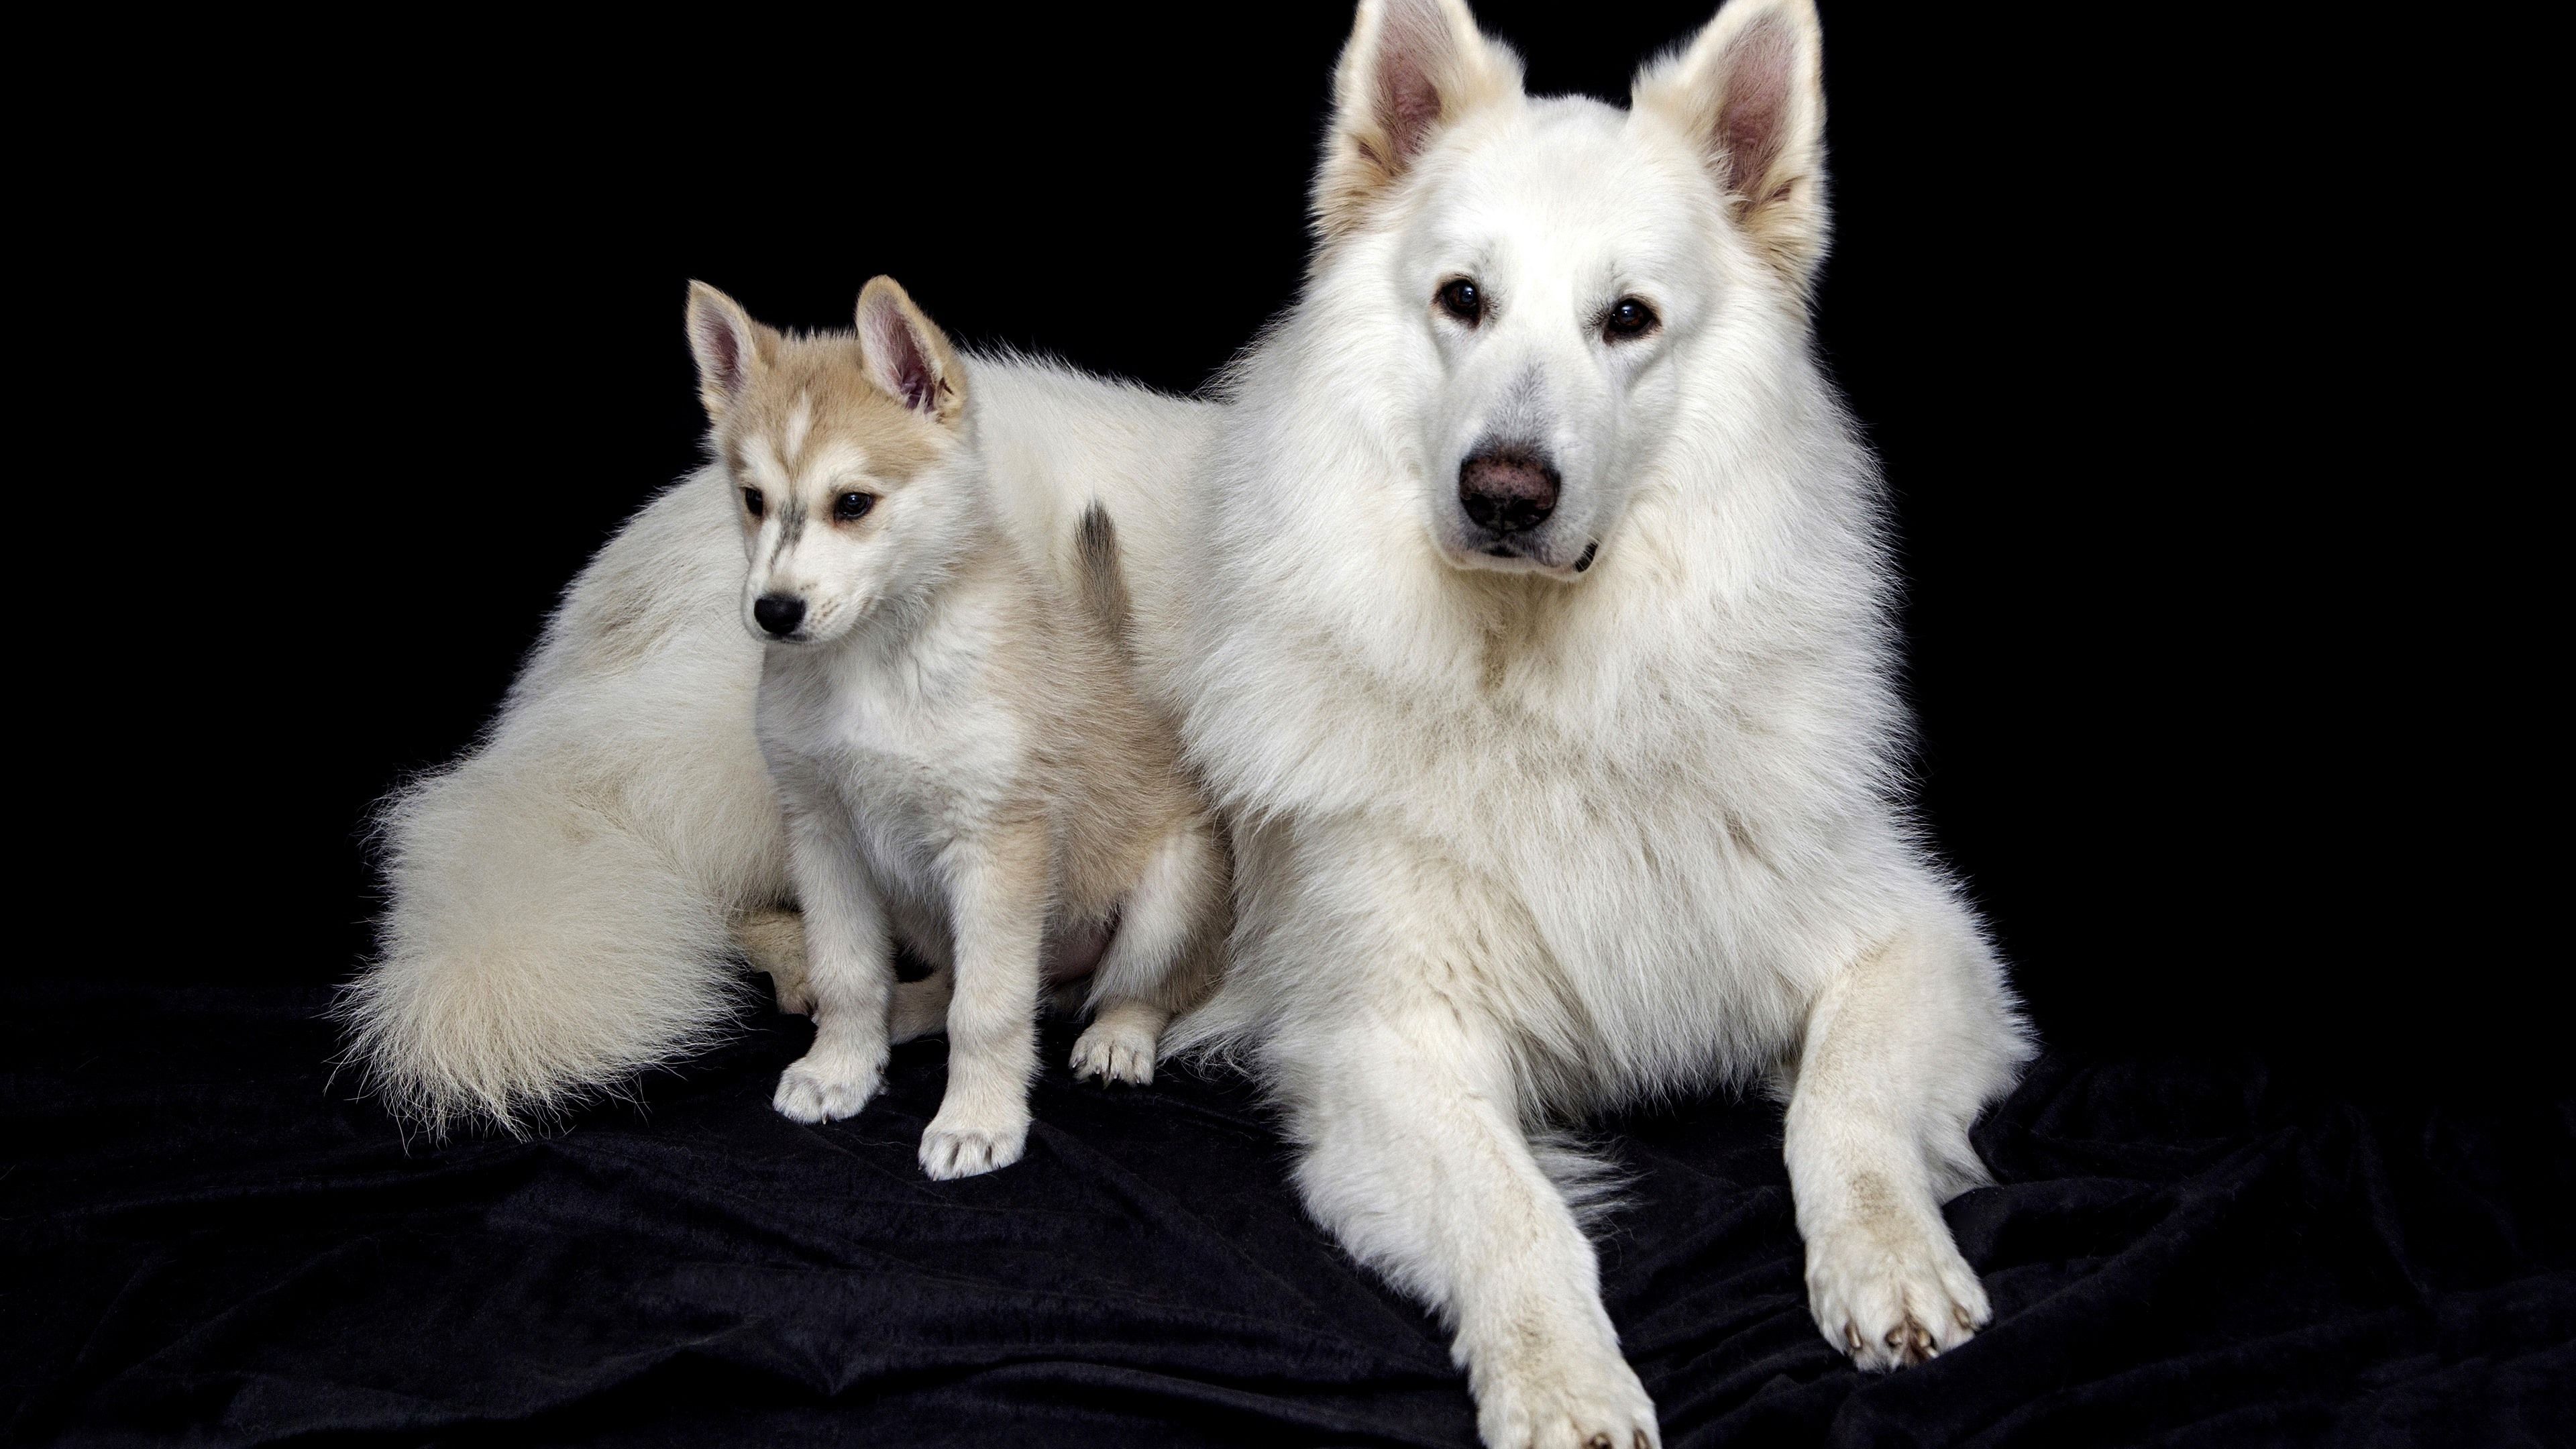 دانلود رایگان عکس سگ مادر فرزند سفید با کیفیت بالا 